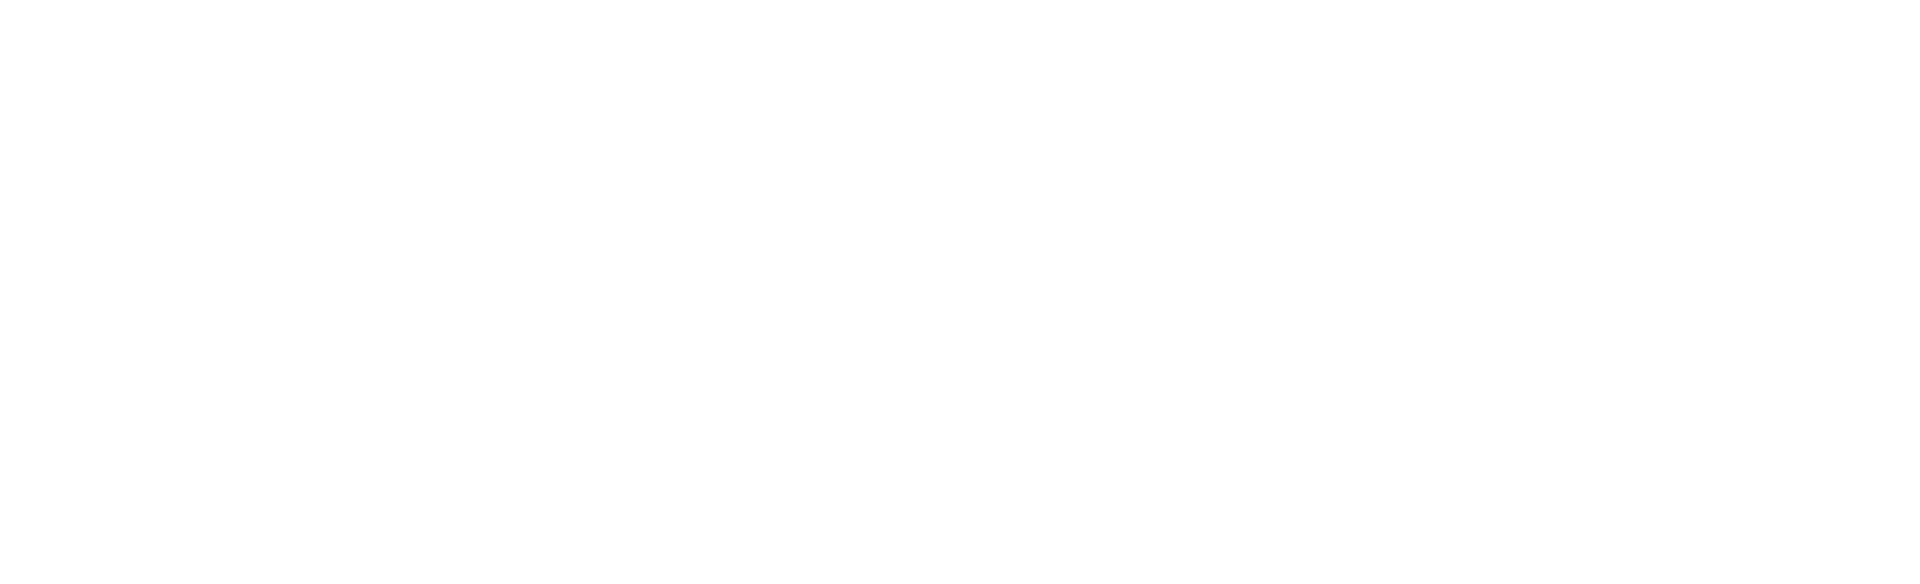 AlteryX-White-Logo-Resized